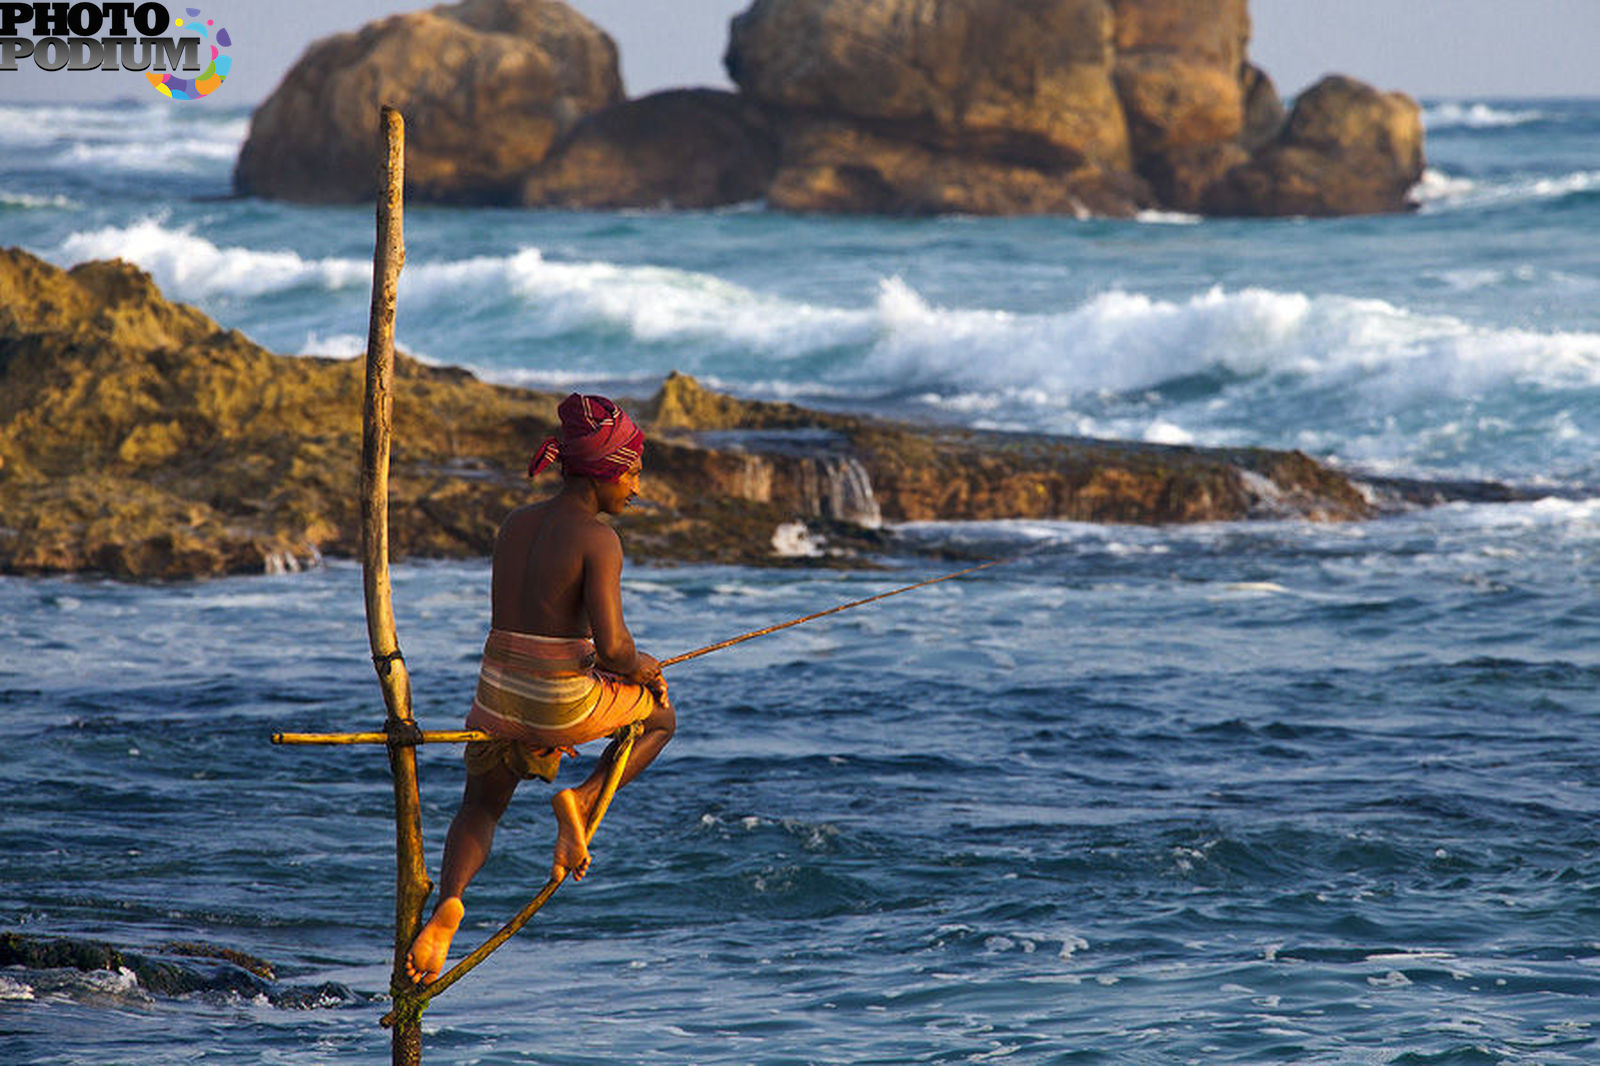 Шри ланка что знать. Велигама Шри Ланка рыбаки. Рыболовство Шри Ланка. Шри Ланка туризм. Рыбаки на Шри Ланке на шестах.